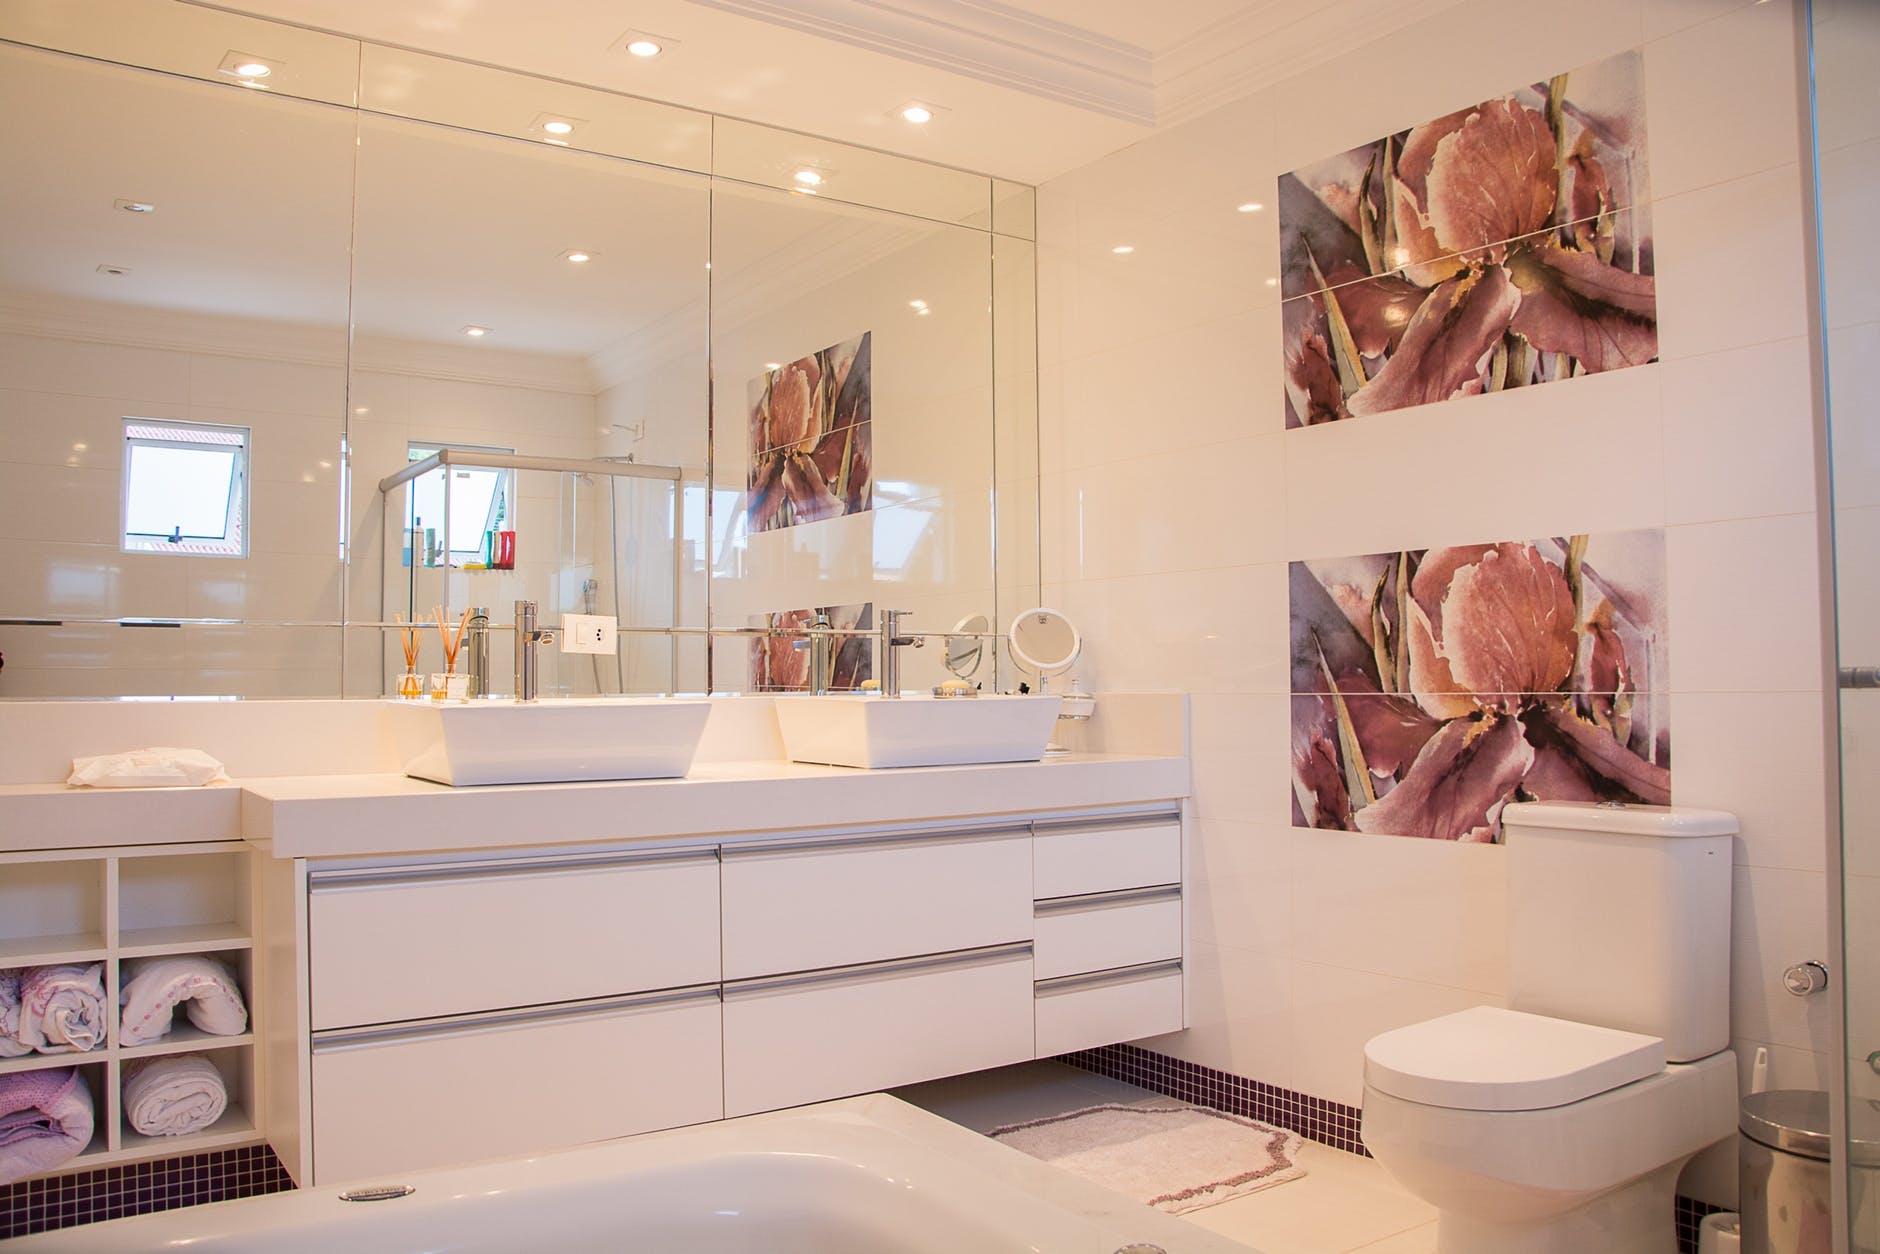 verkiezing Maak een bed Latijns Hoe kun je het beste de voegen in je badkamer schoonmaken? | DIK.NL